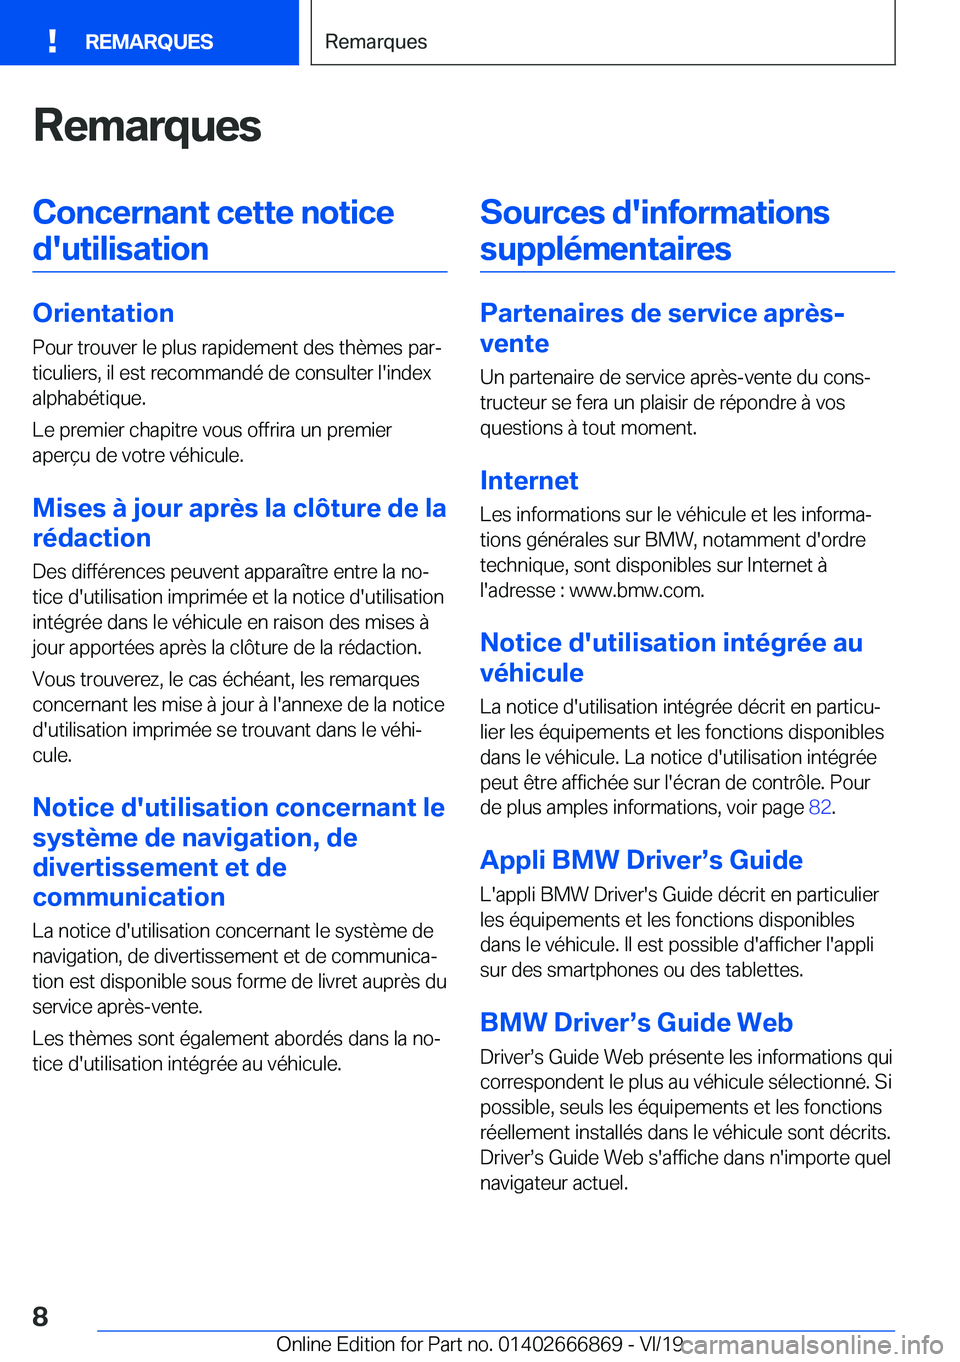 BMW X4 M 2020  Notices Demploi (in French) �R�e�m�a�r�q�u�e�s�C�o�n�c�e�r�n�a�n�t��c�e�t�t�e��n�o�t�i�c�e�d�'�u�t�i�l�i�s�a�t�i�o�n
�O�r�i�e�n�t�a�t�i�o�n �P�o�u�r��t�r�o�u�v�e�r��l�e��p�l�u�s��r�a�p�i�d�e�m�e�n�t��d�e�s��t�h�è�m�